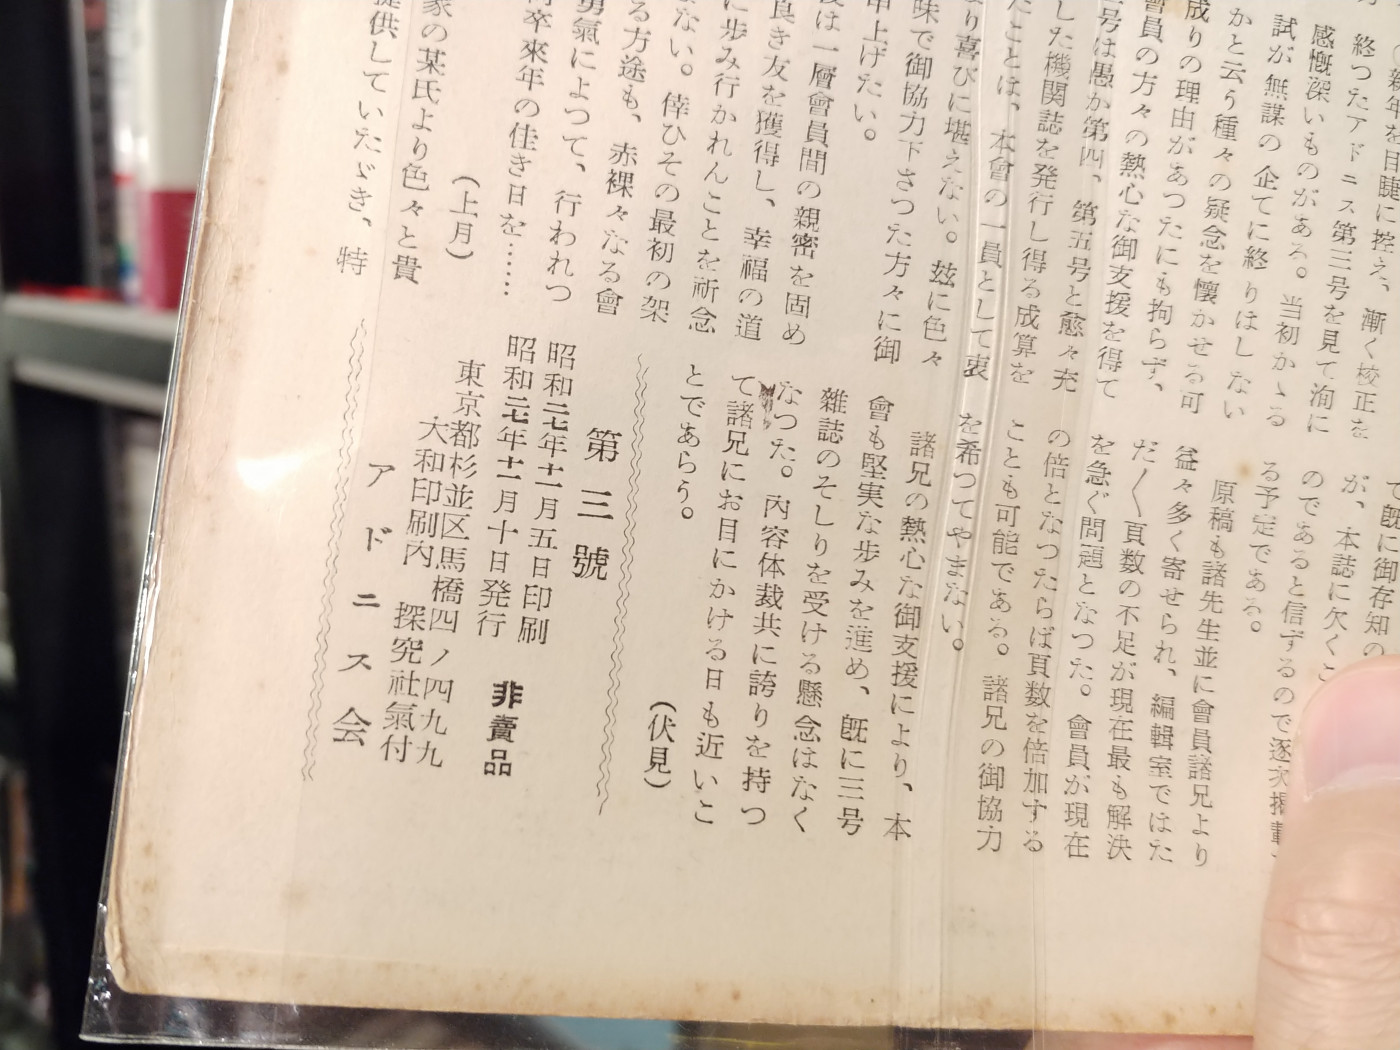 ホモ本ブックカフェ オカマルト で日本初のゲイ雑誌をチェック 生まれ年のゲイシーンも振り返ってみました Buzzap